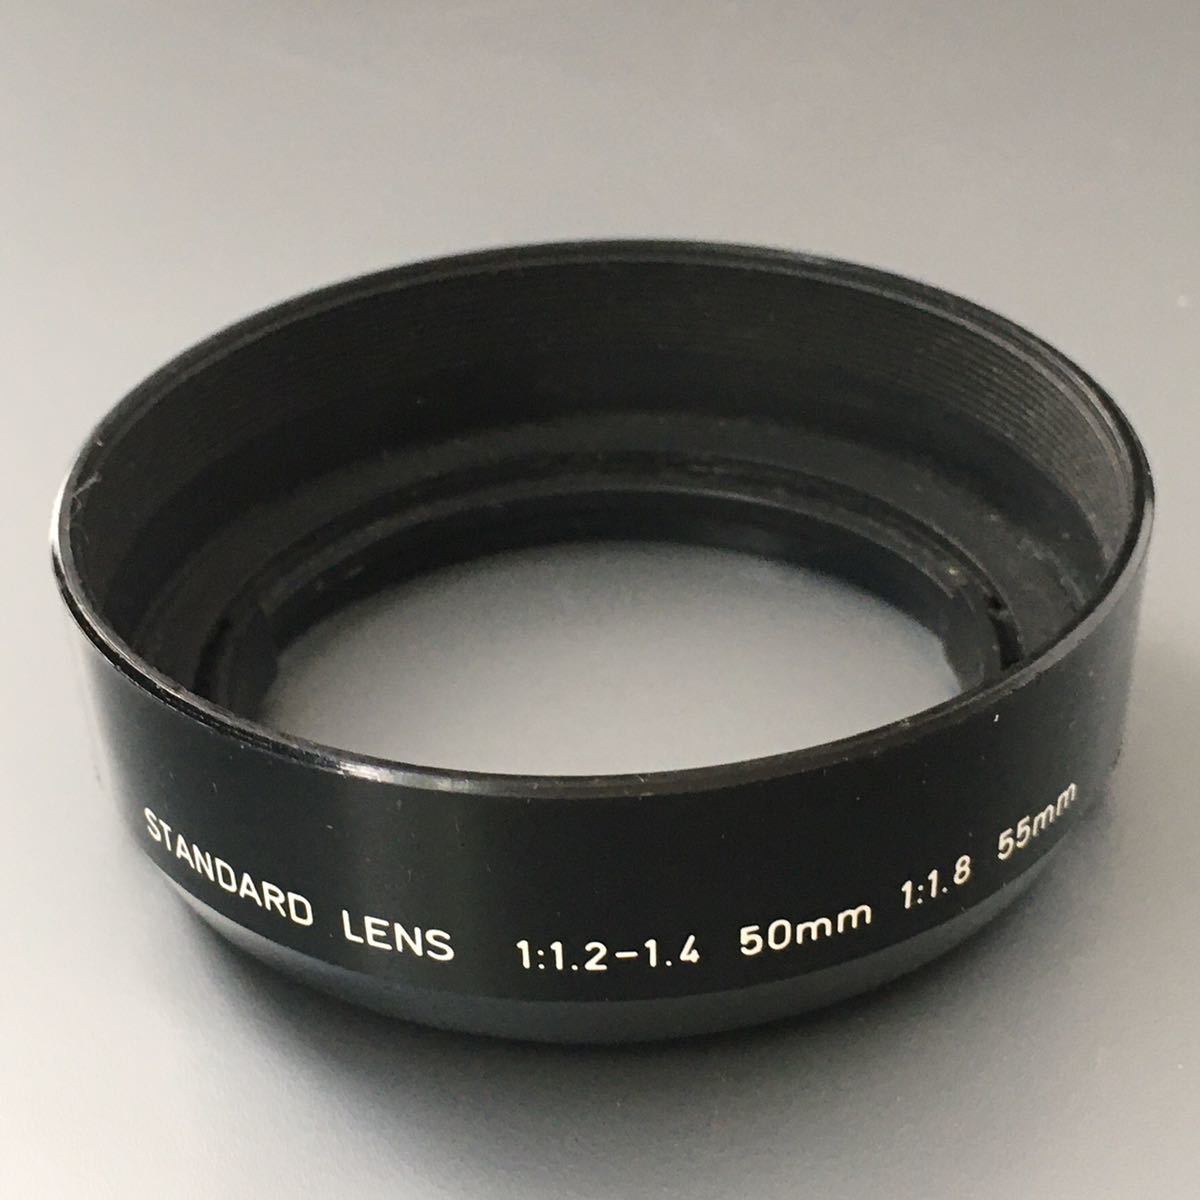 アサヒ ペンタックス 52mm レンズフード［ASAHI PENTAX STANDARD LENS 1 1.2-1.4 50mm 1 1.8  55mm］クリップオン式送料無料